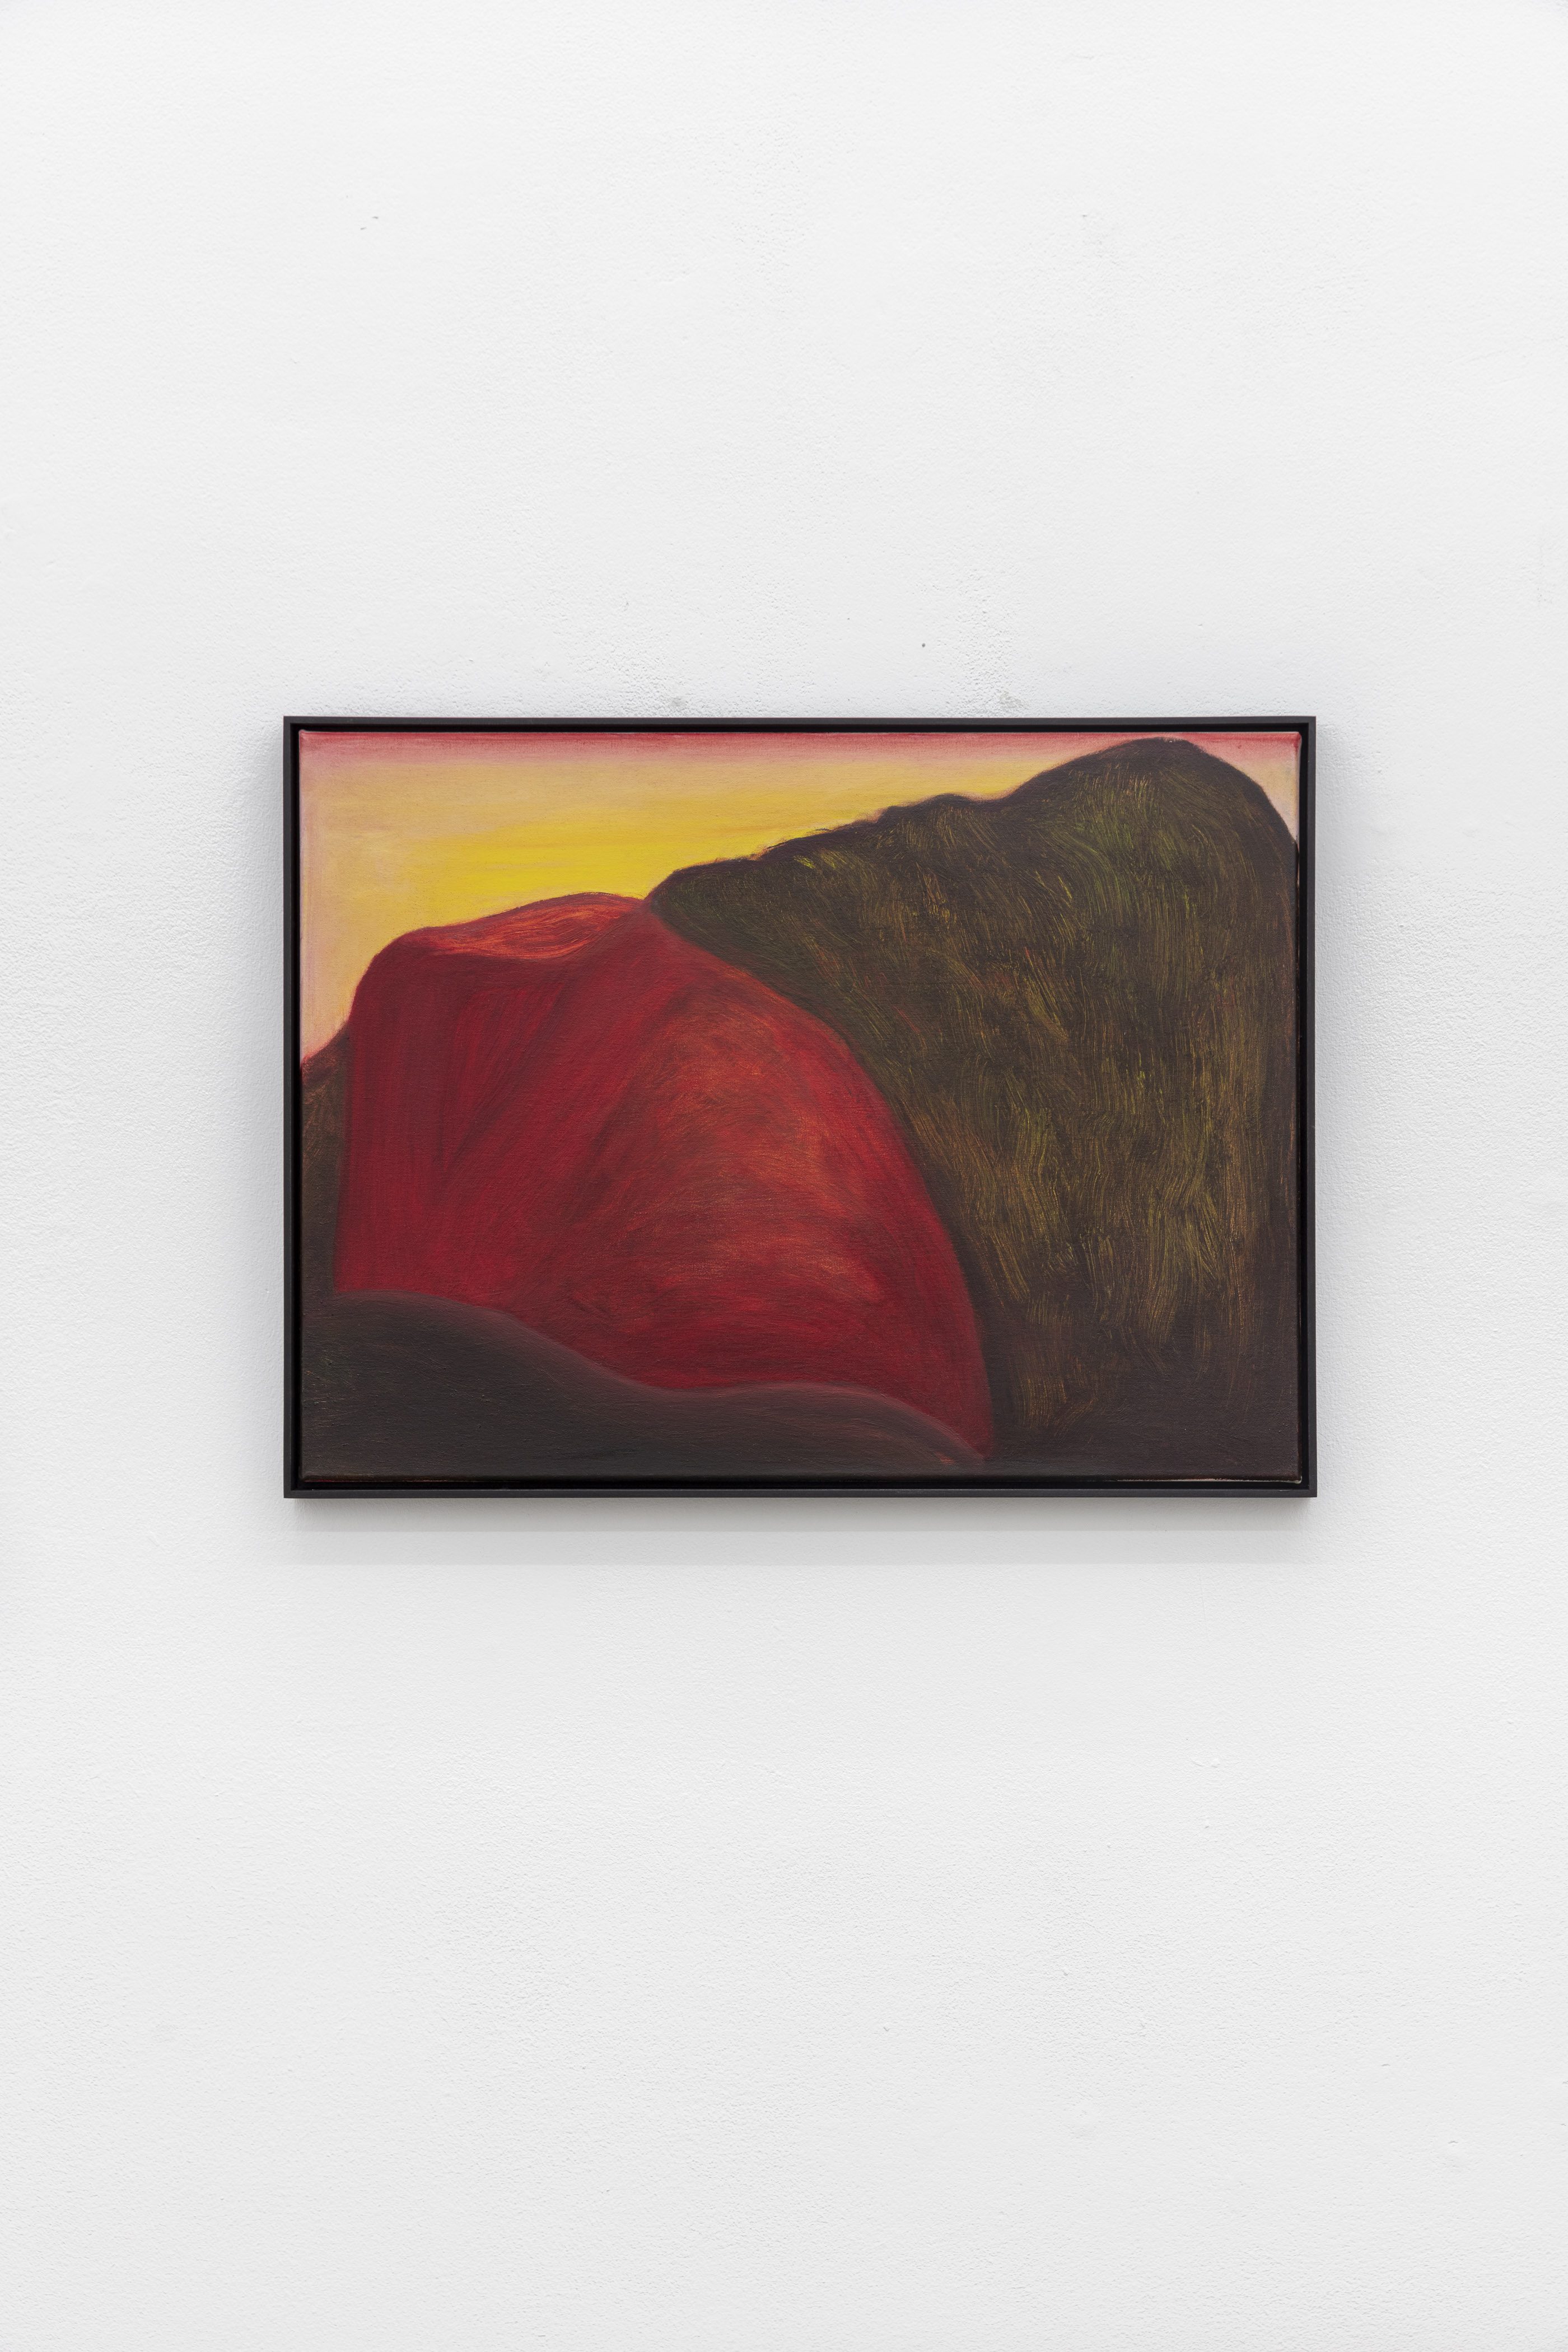 Veronika Hilger, Untitled, 2023, oil on canvas, in wooden frame, 45 Ã— 60 cm, VH/M 177